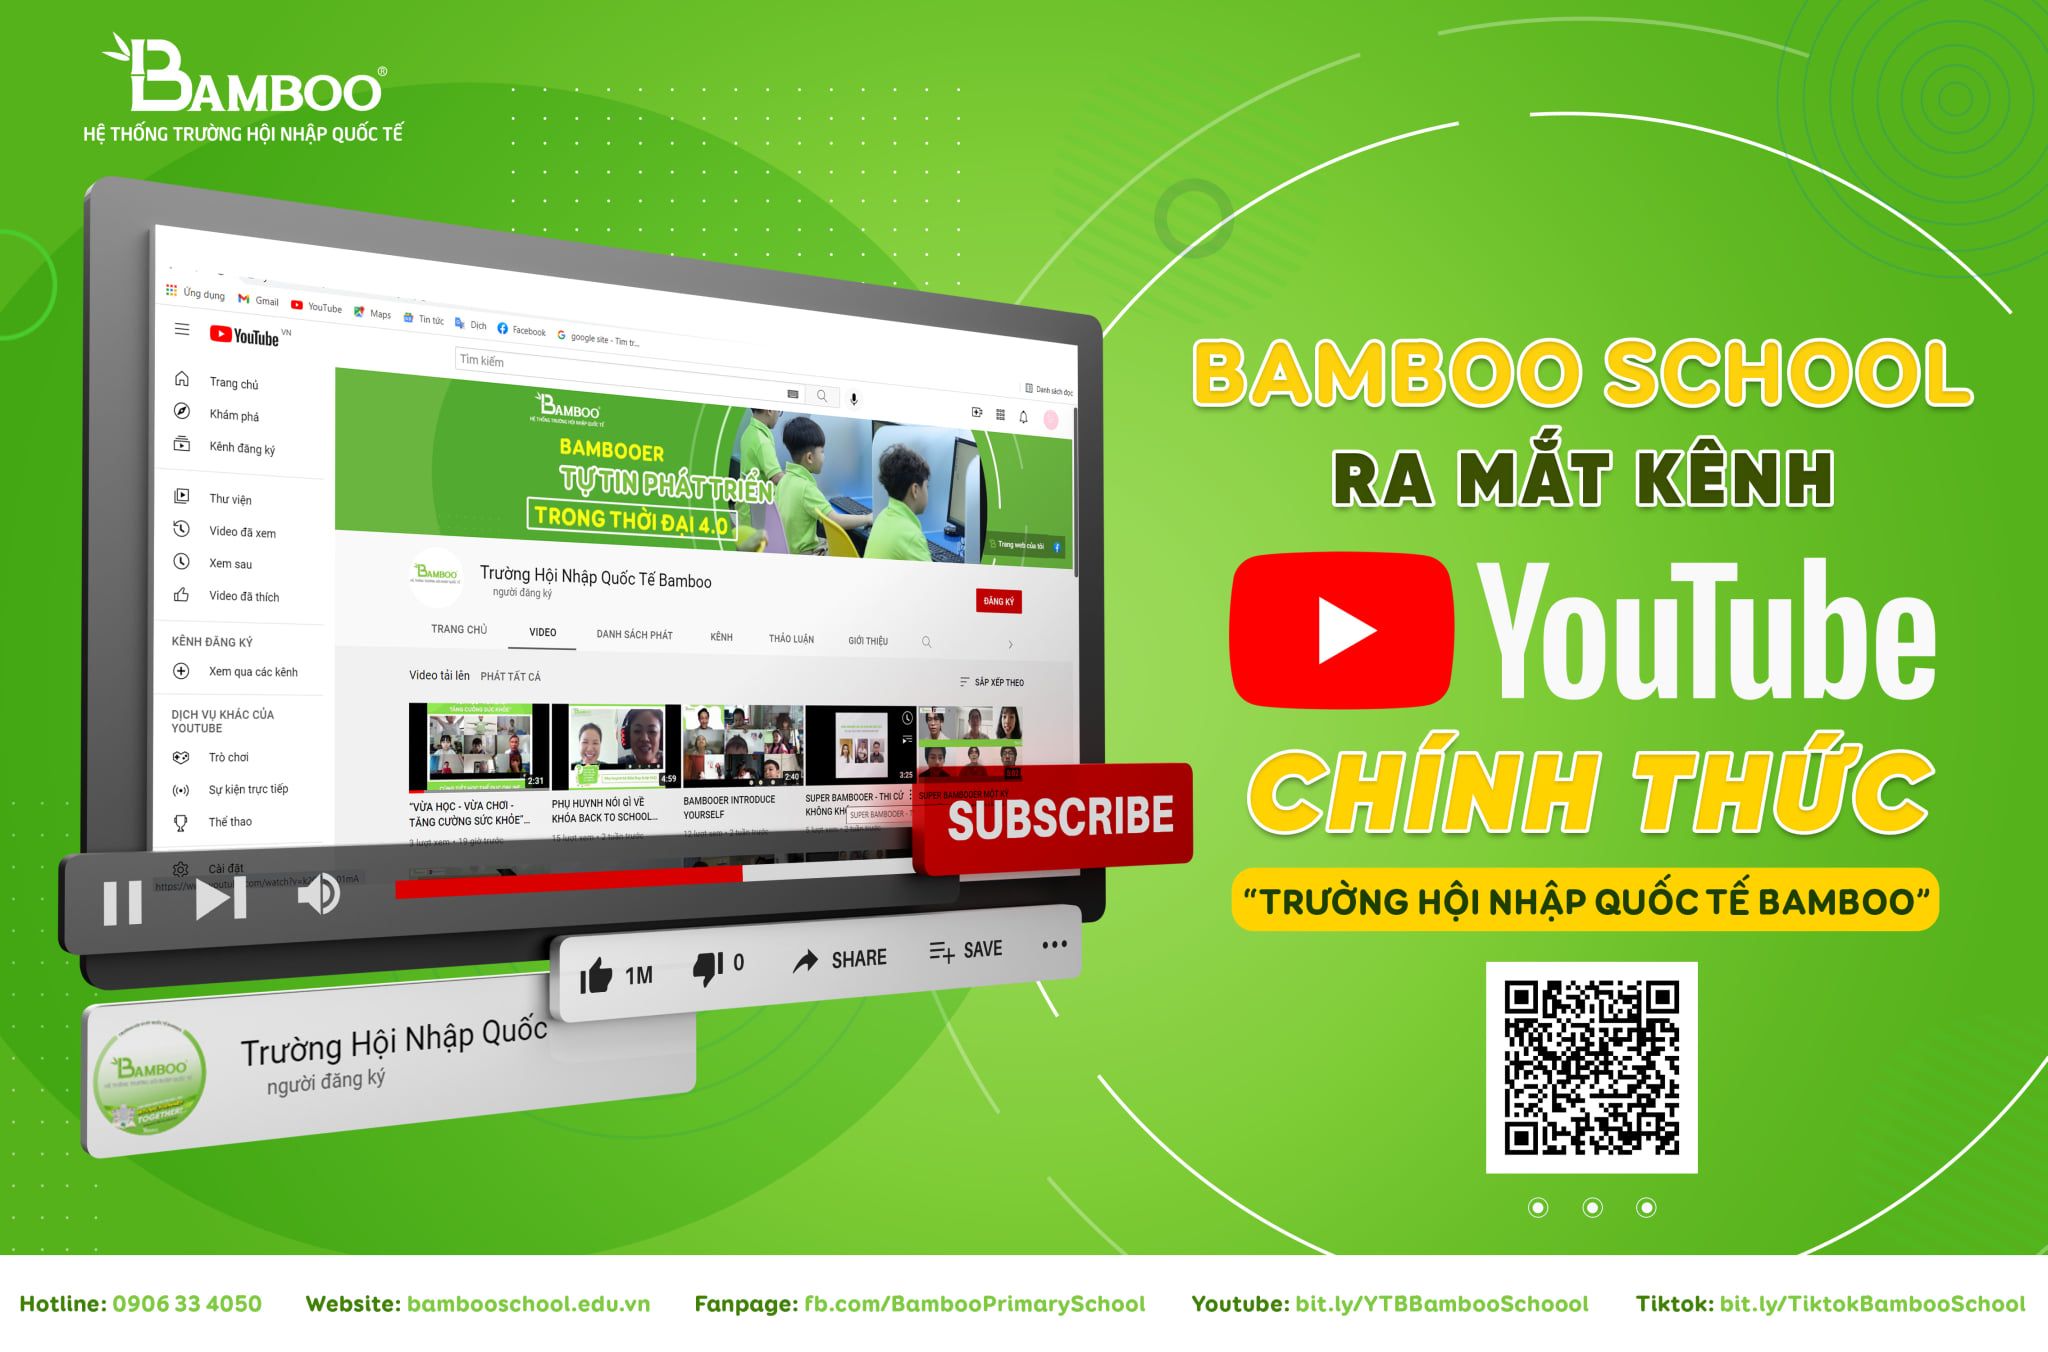 Kênh Youtube của Bamboo School